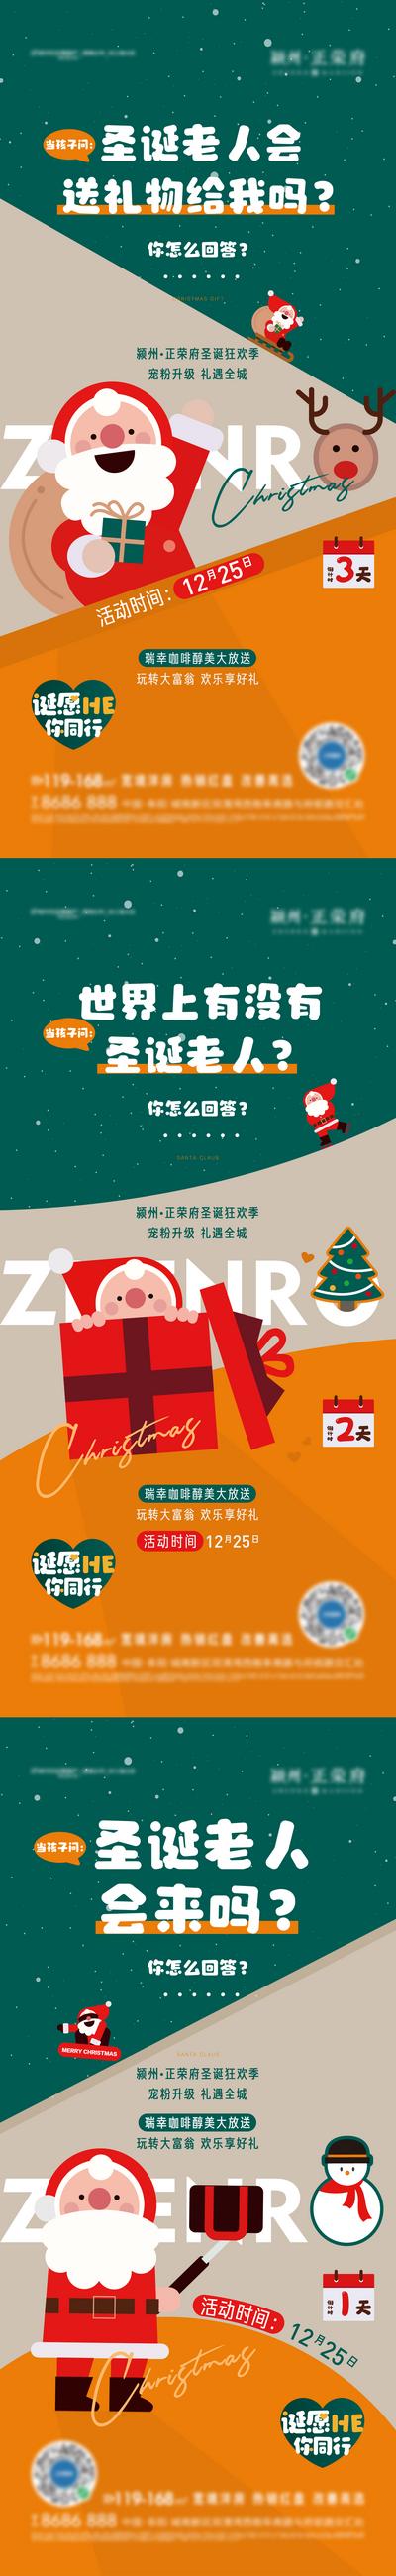 南门网 海报  地产 西方节日 圣诞节 圣诞老人 雪人 麋鹿 扁平化 插画  